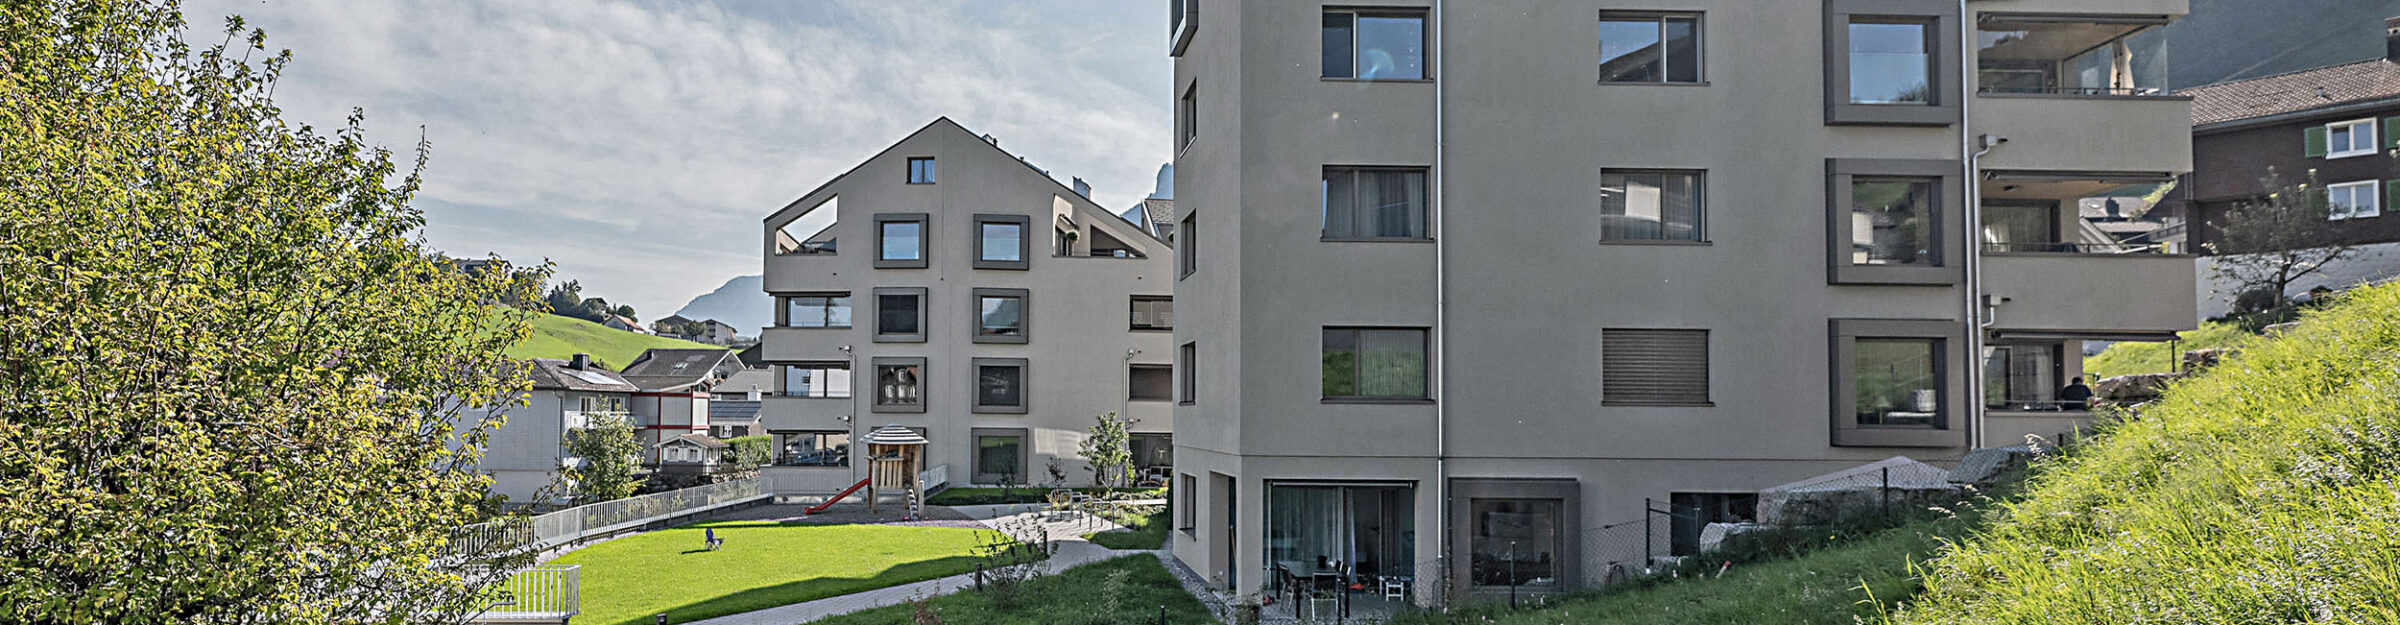 Architektur Mehrfamilienhäuser «Bergrausch», Emmetten NW